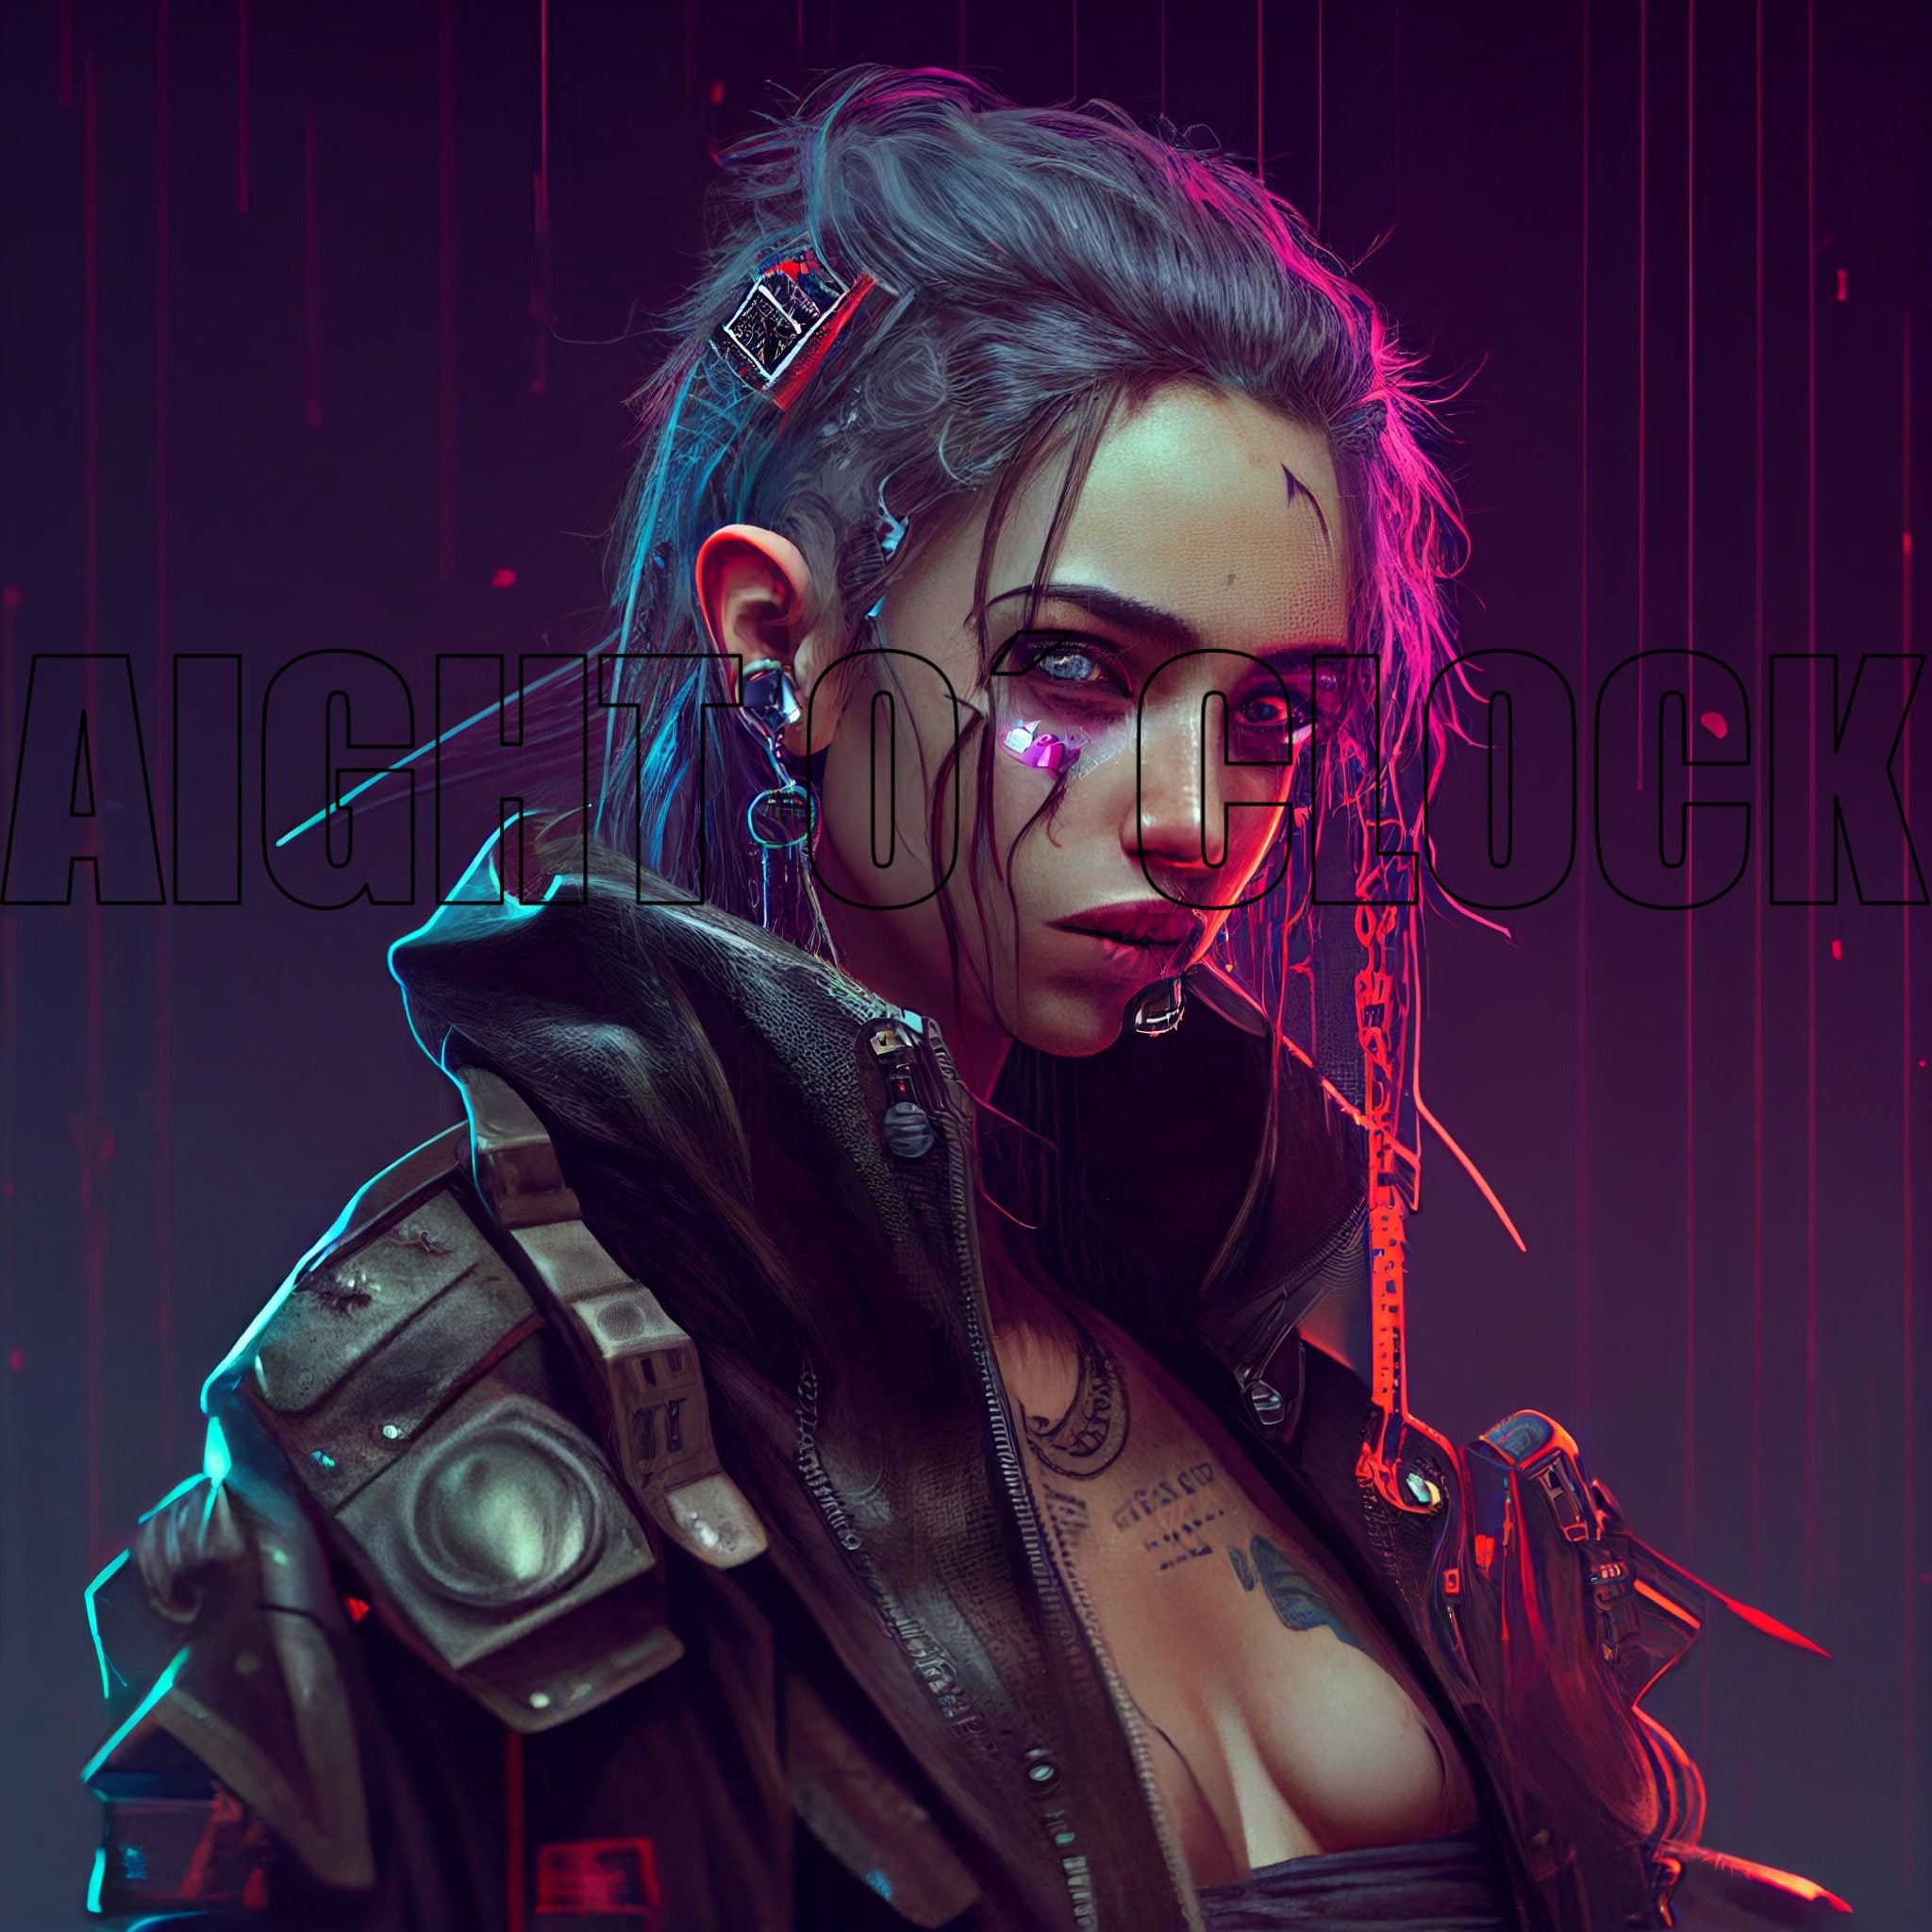 AI Art: 2D Girl in cyberpunk reality by @JkWW 💜🐖